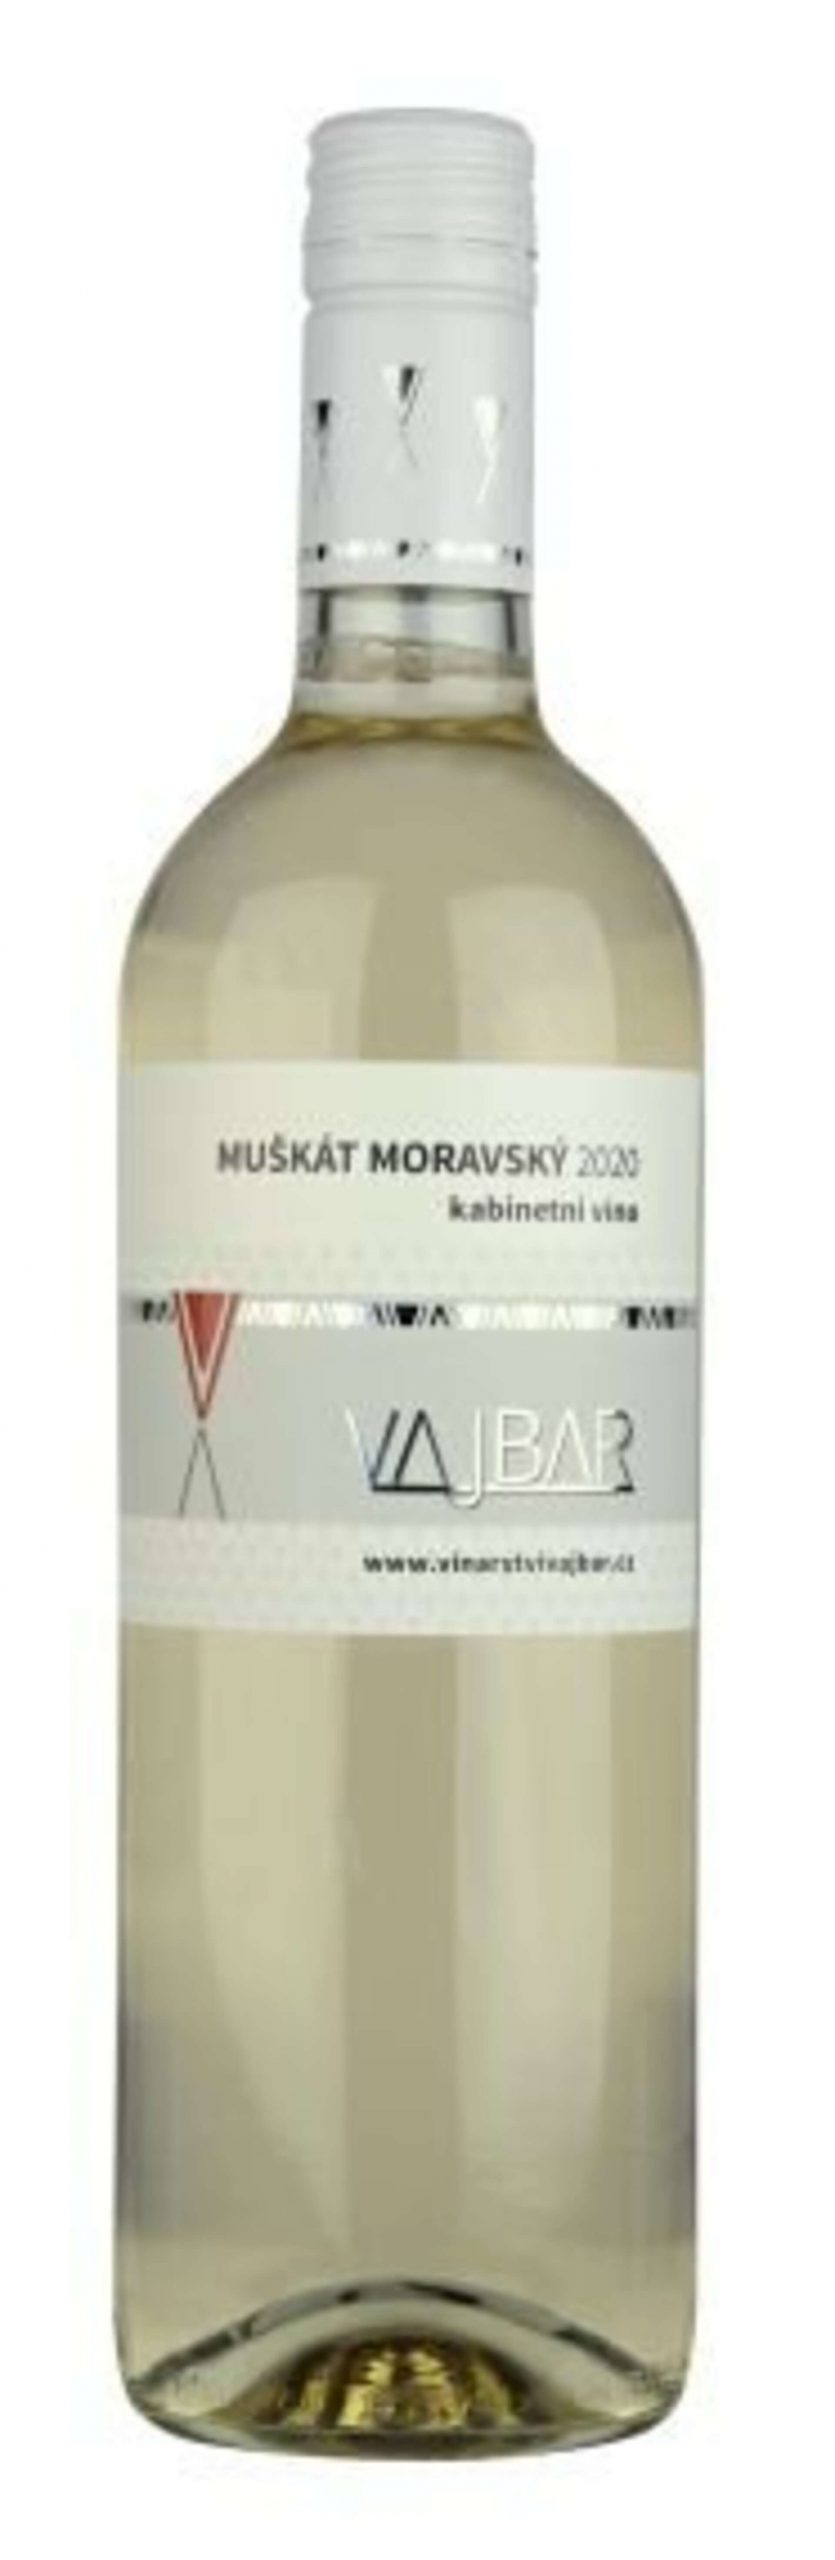 Vajbar Muškát moravský 2020 750 ml